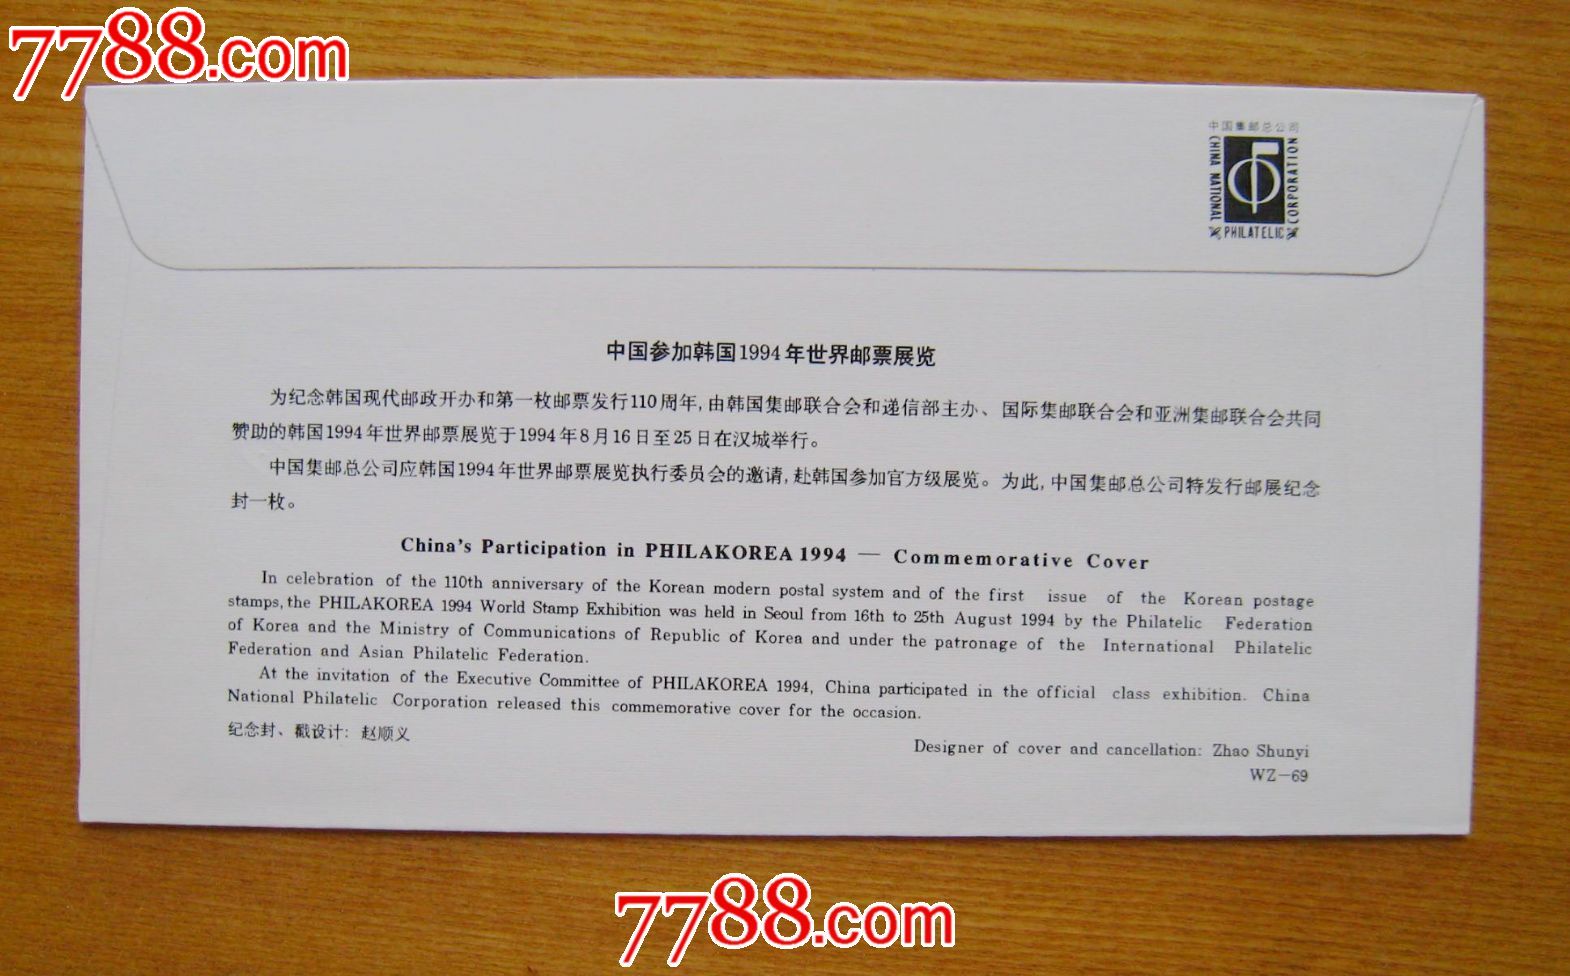 中国参加韩国世界邮票展览-1994-WZ69-se255